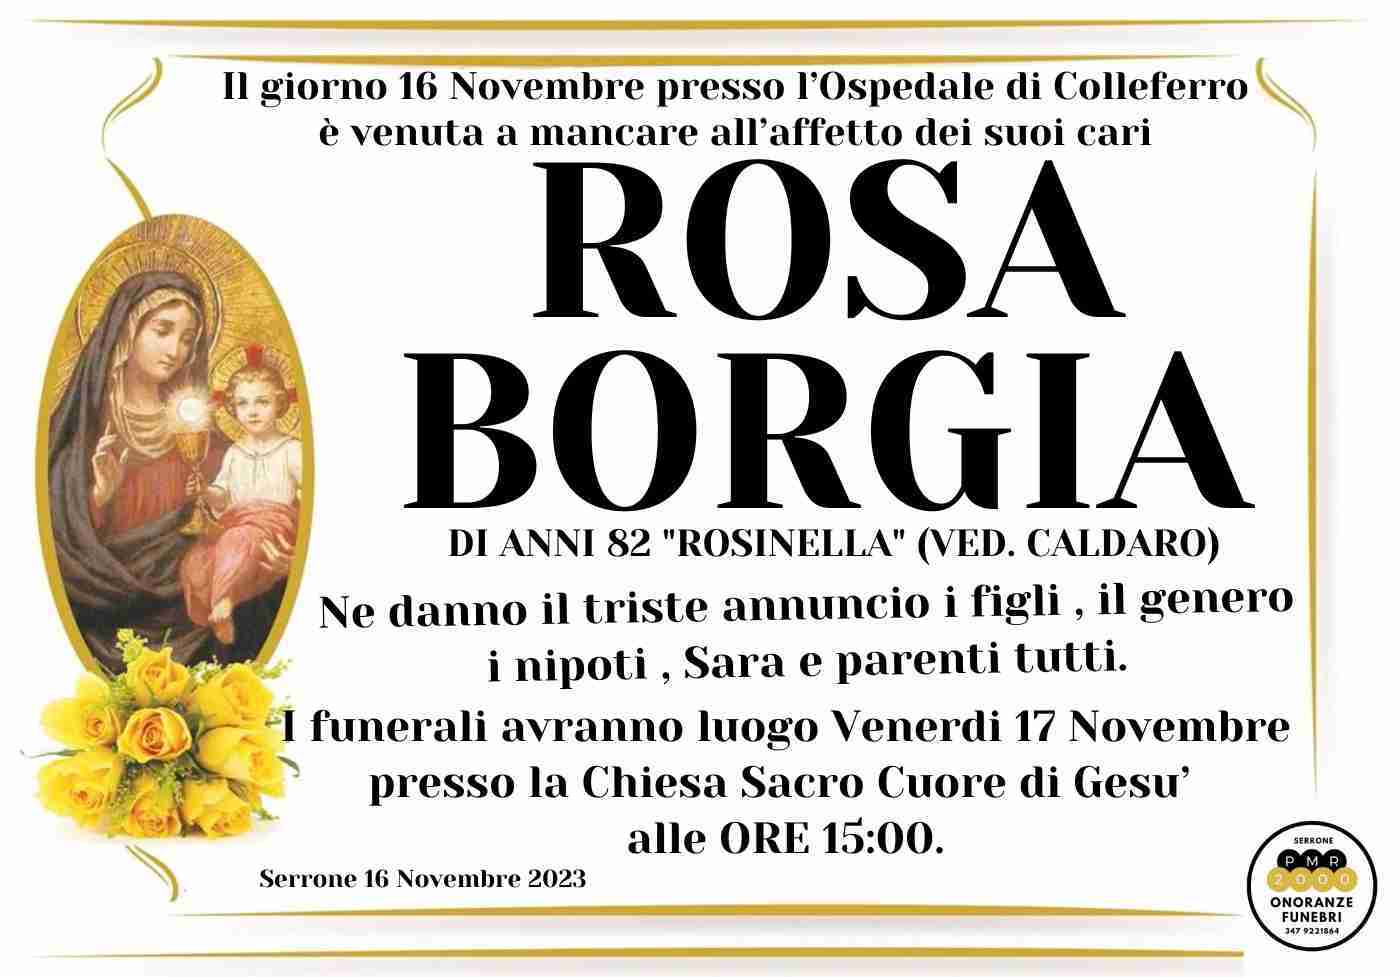 Rosa Borgia